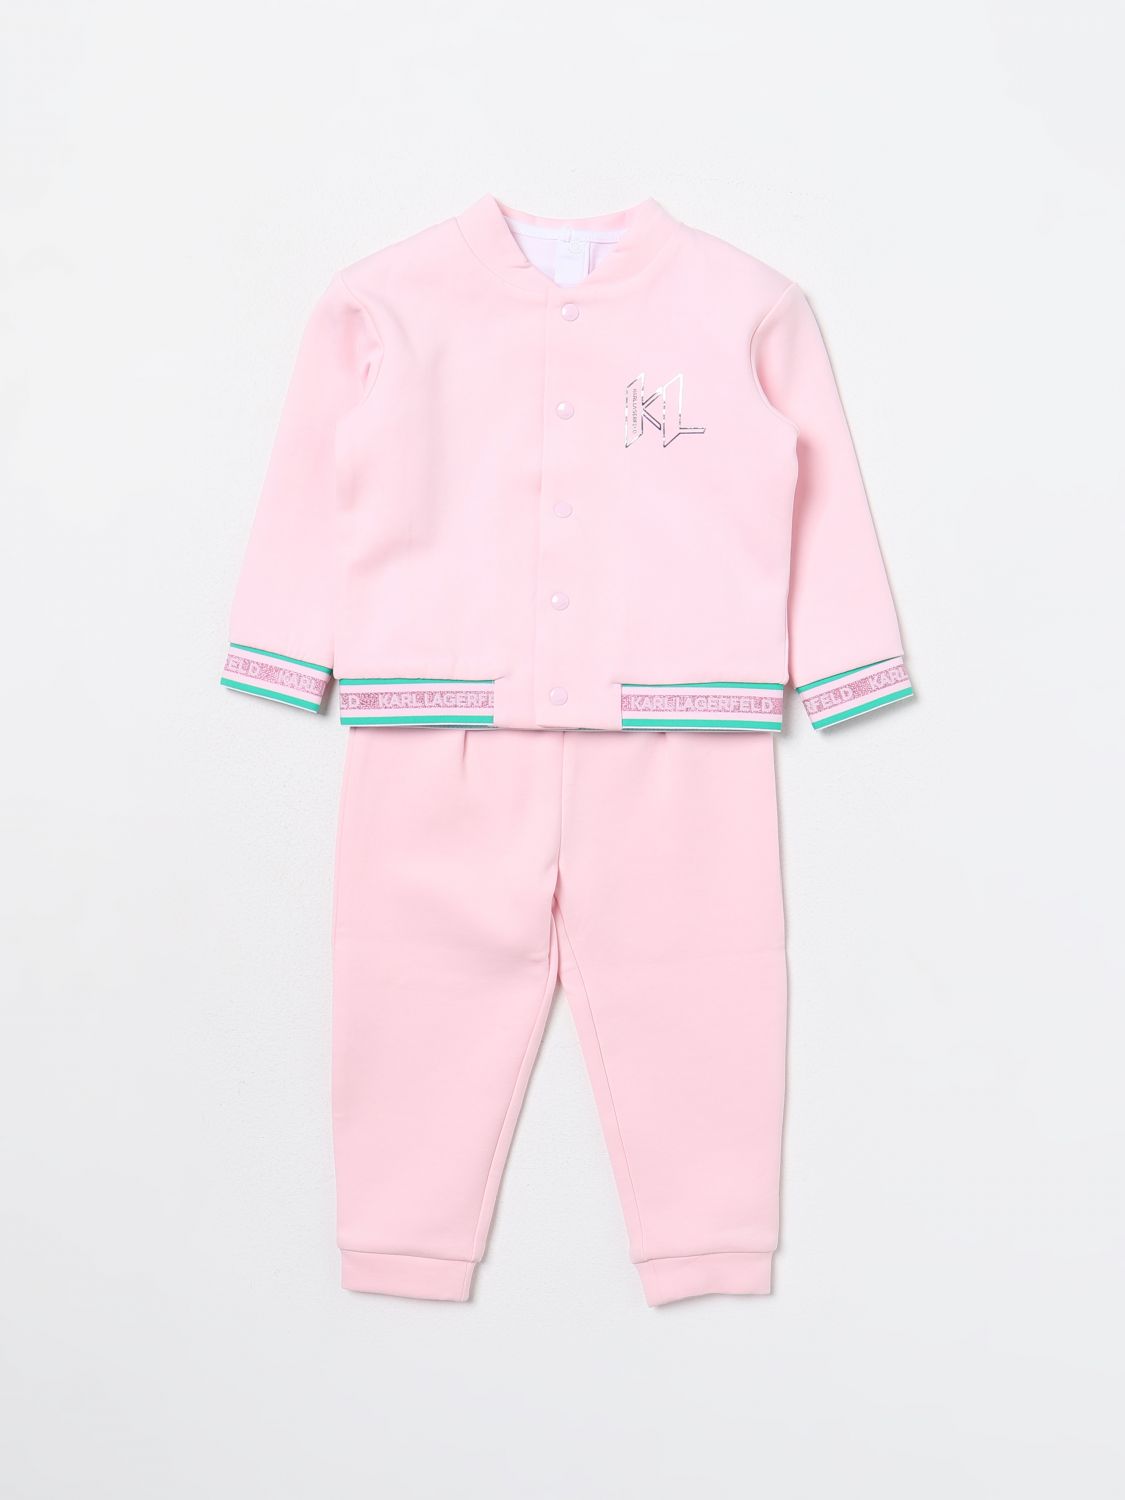 Karl Lagerfeld Babies' Romper  Kids Kids Color Pink